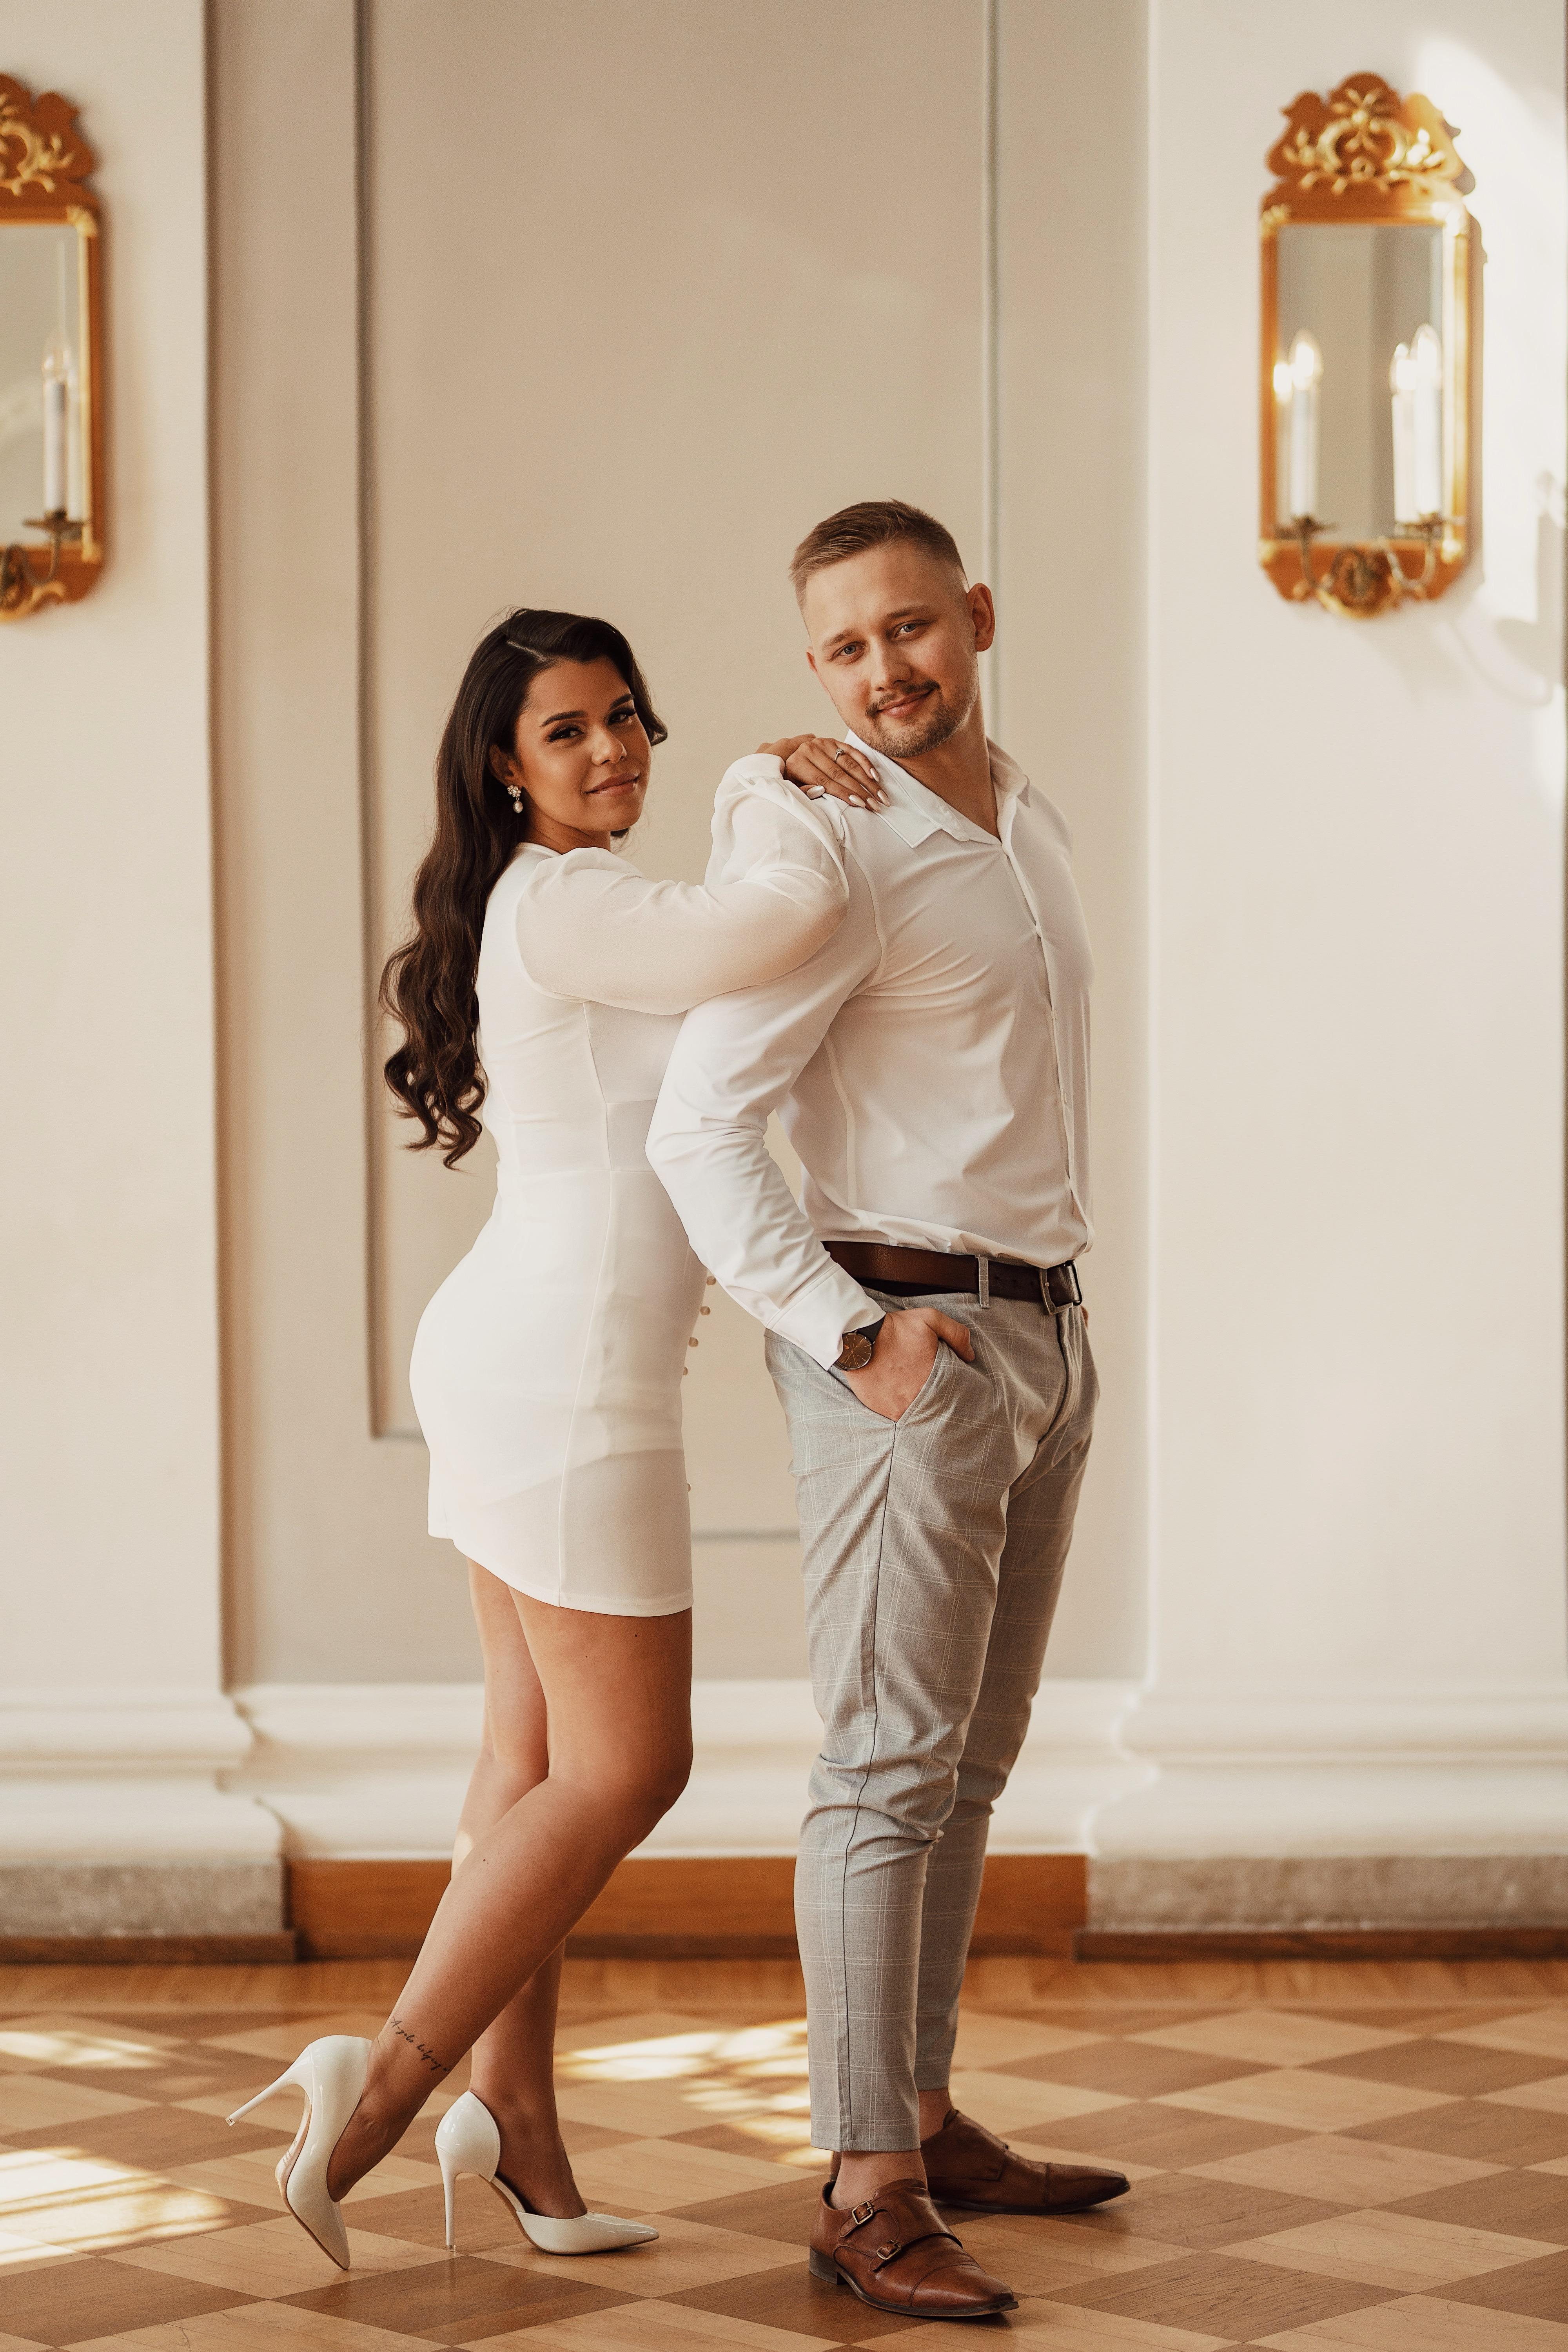 The Wedding Website of Rafaela Marques and Andero Kuhhi